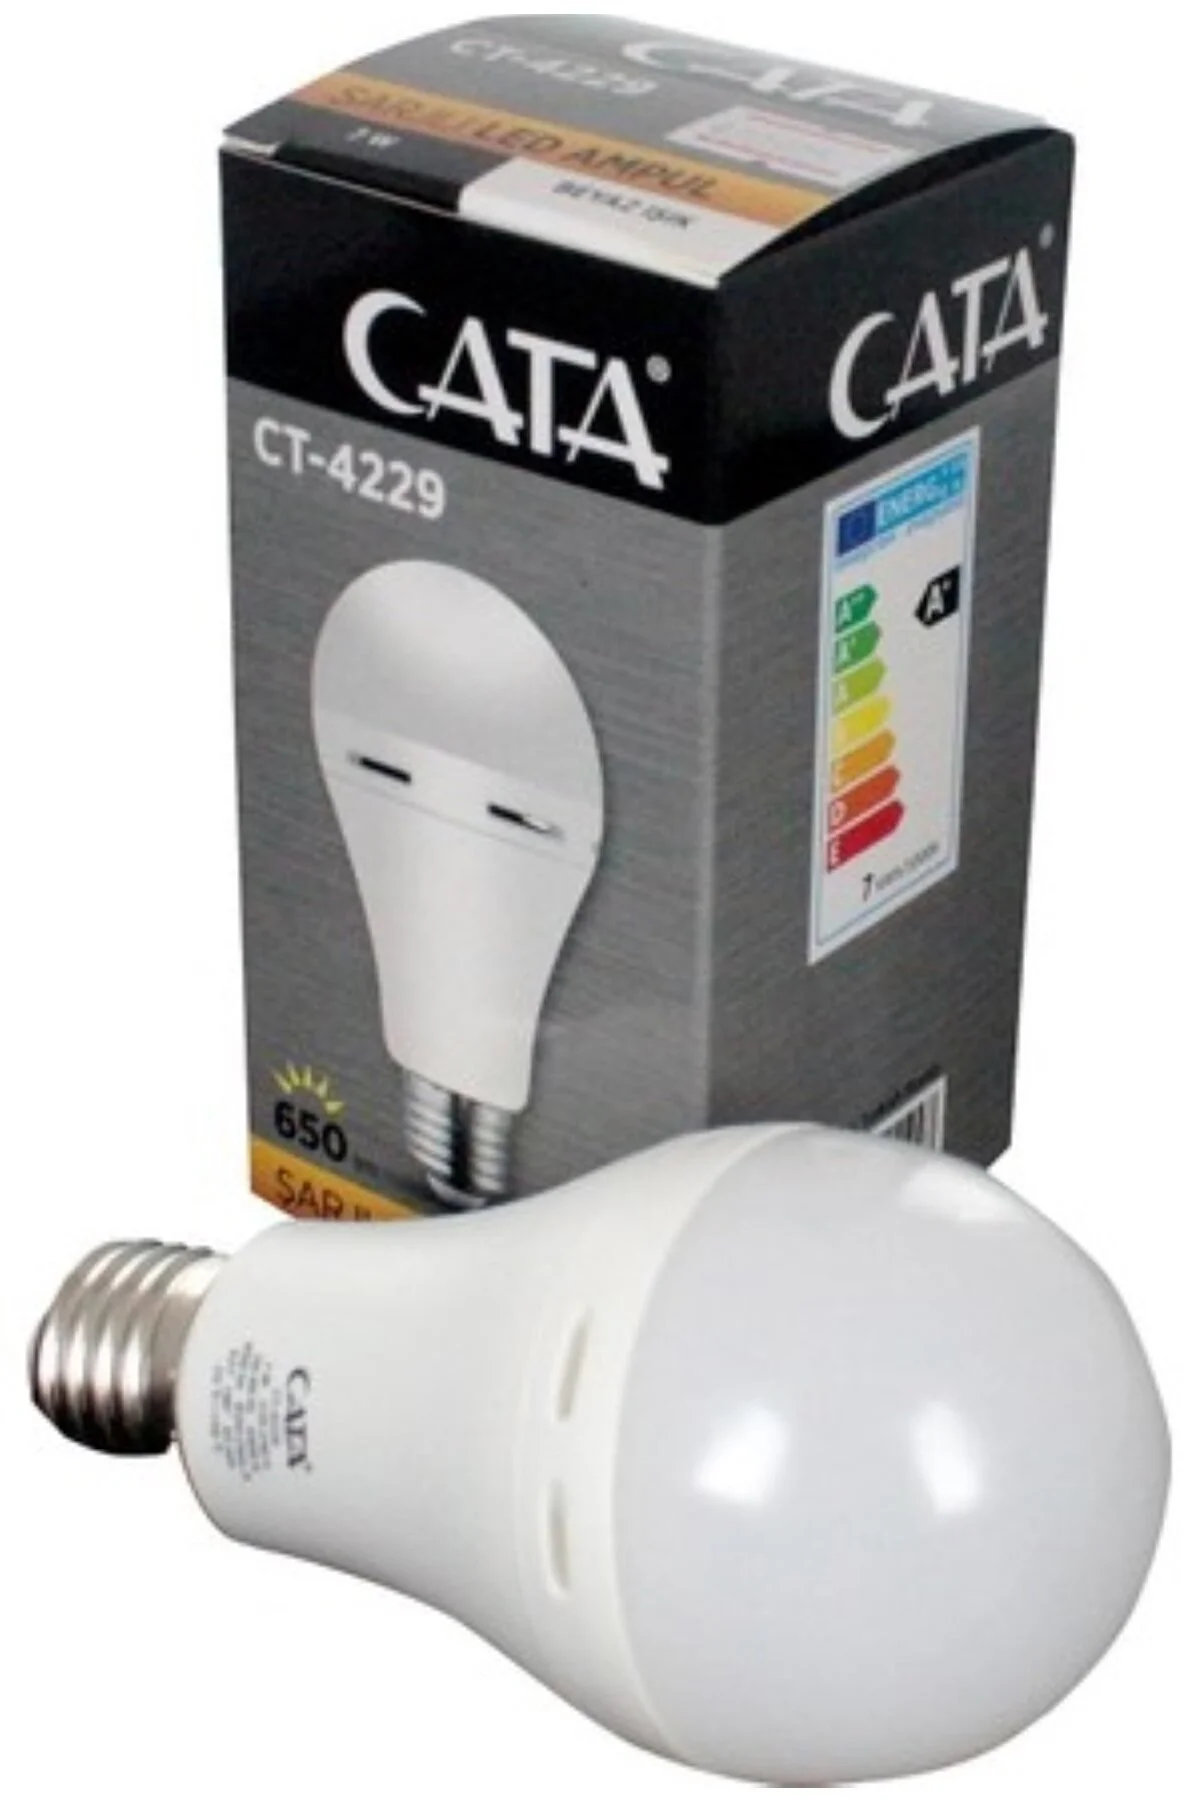 Cata CT-4229 9w Şarjlı Led Ampul Beyaz Işık - 1